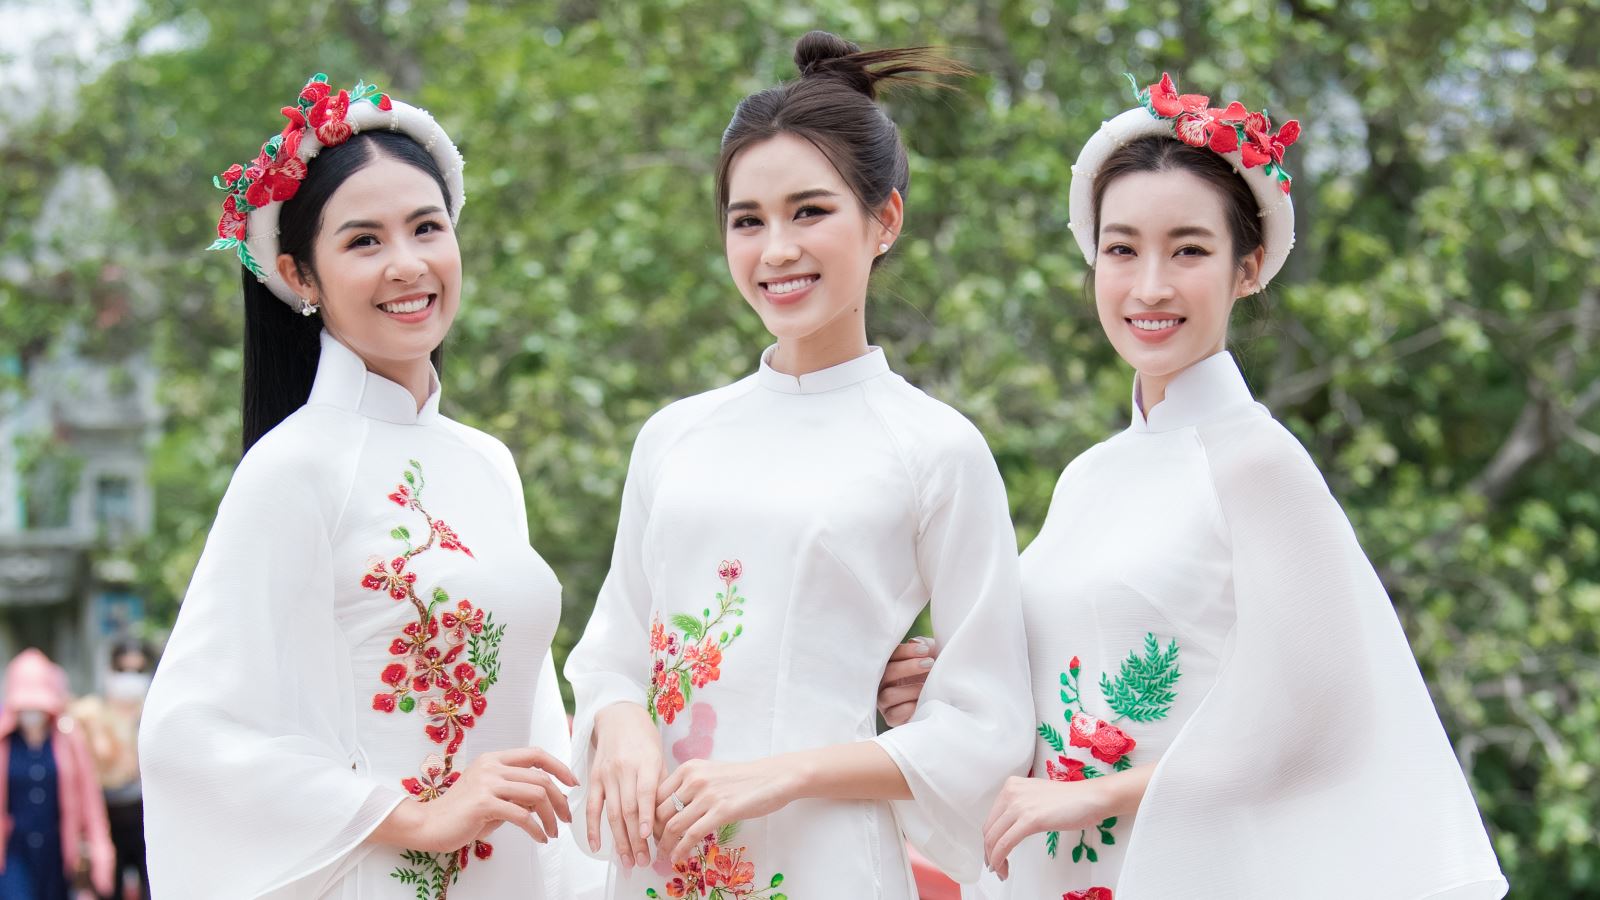 3 hoa hậu Ngọc Hân, Đỗ Mỹ Linh, Đỗ Hà hội ngộ quảng bá du lịch Hà Nội